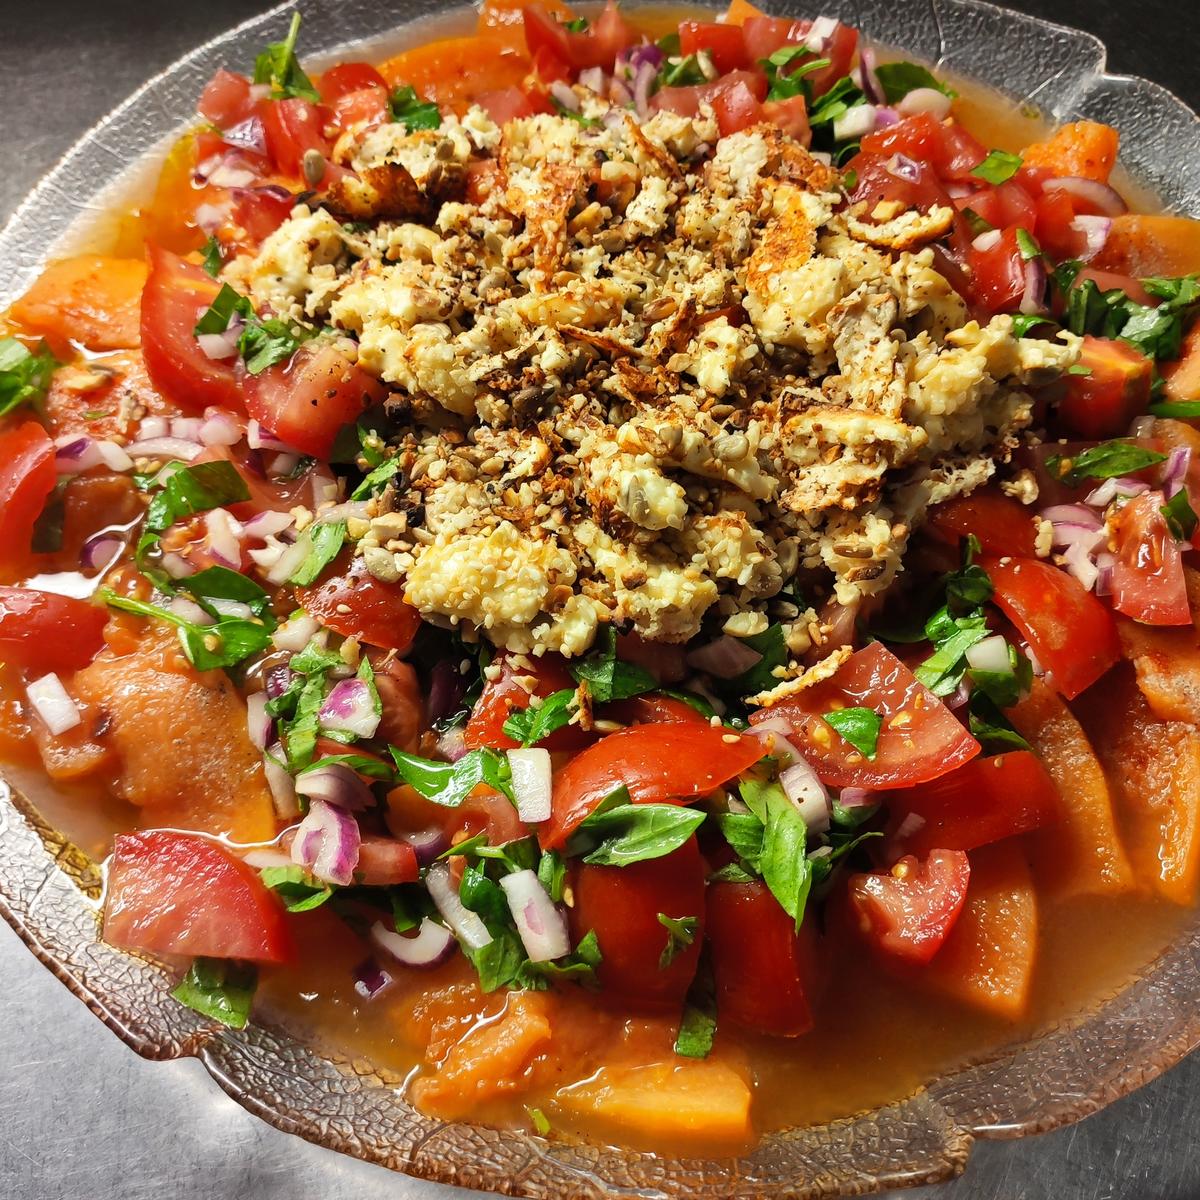 Tomatensalat mit gegrillter Melone und Feta - Rezept - Bild Nr. 2